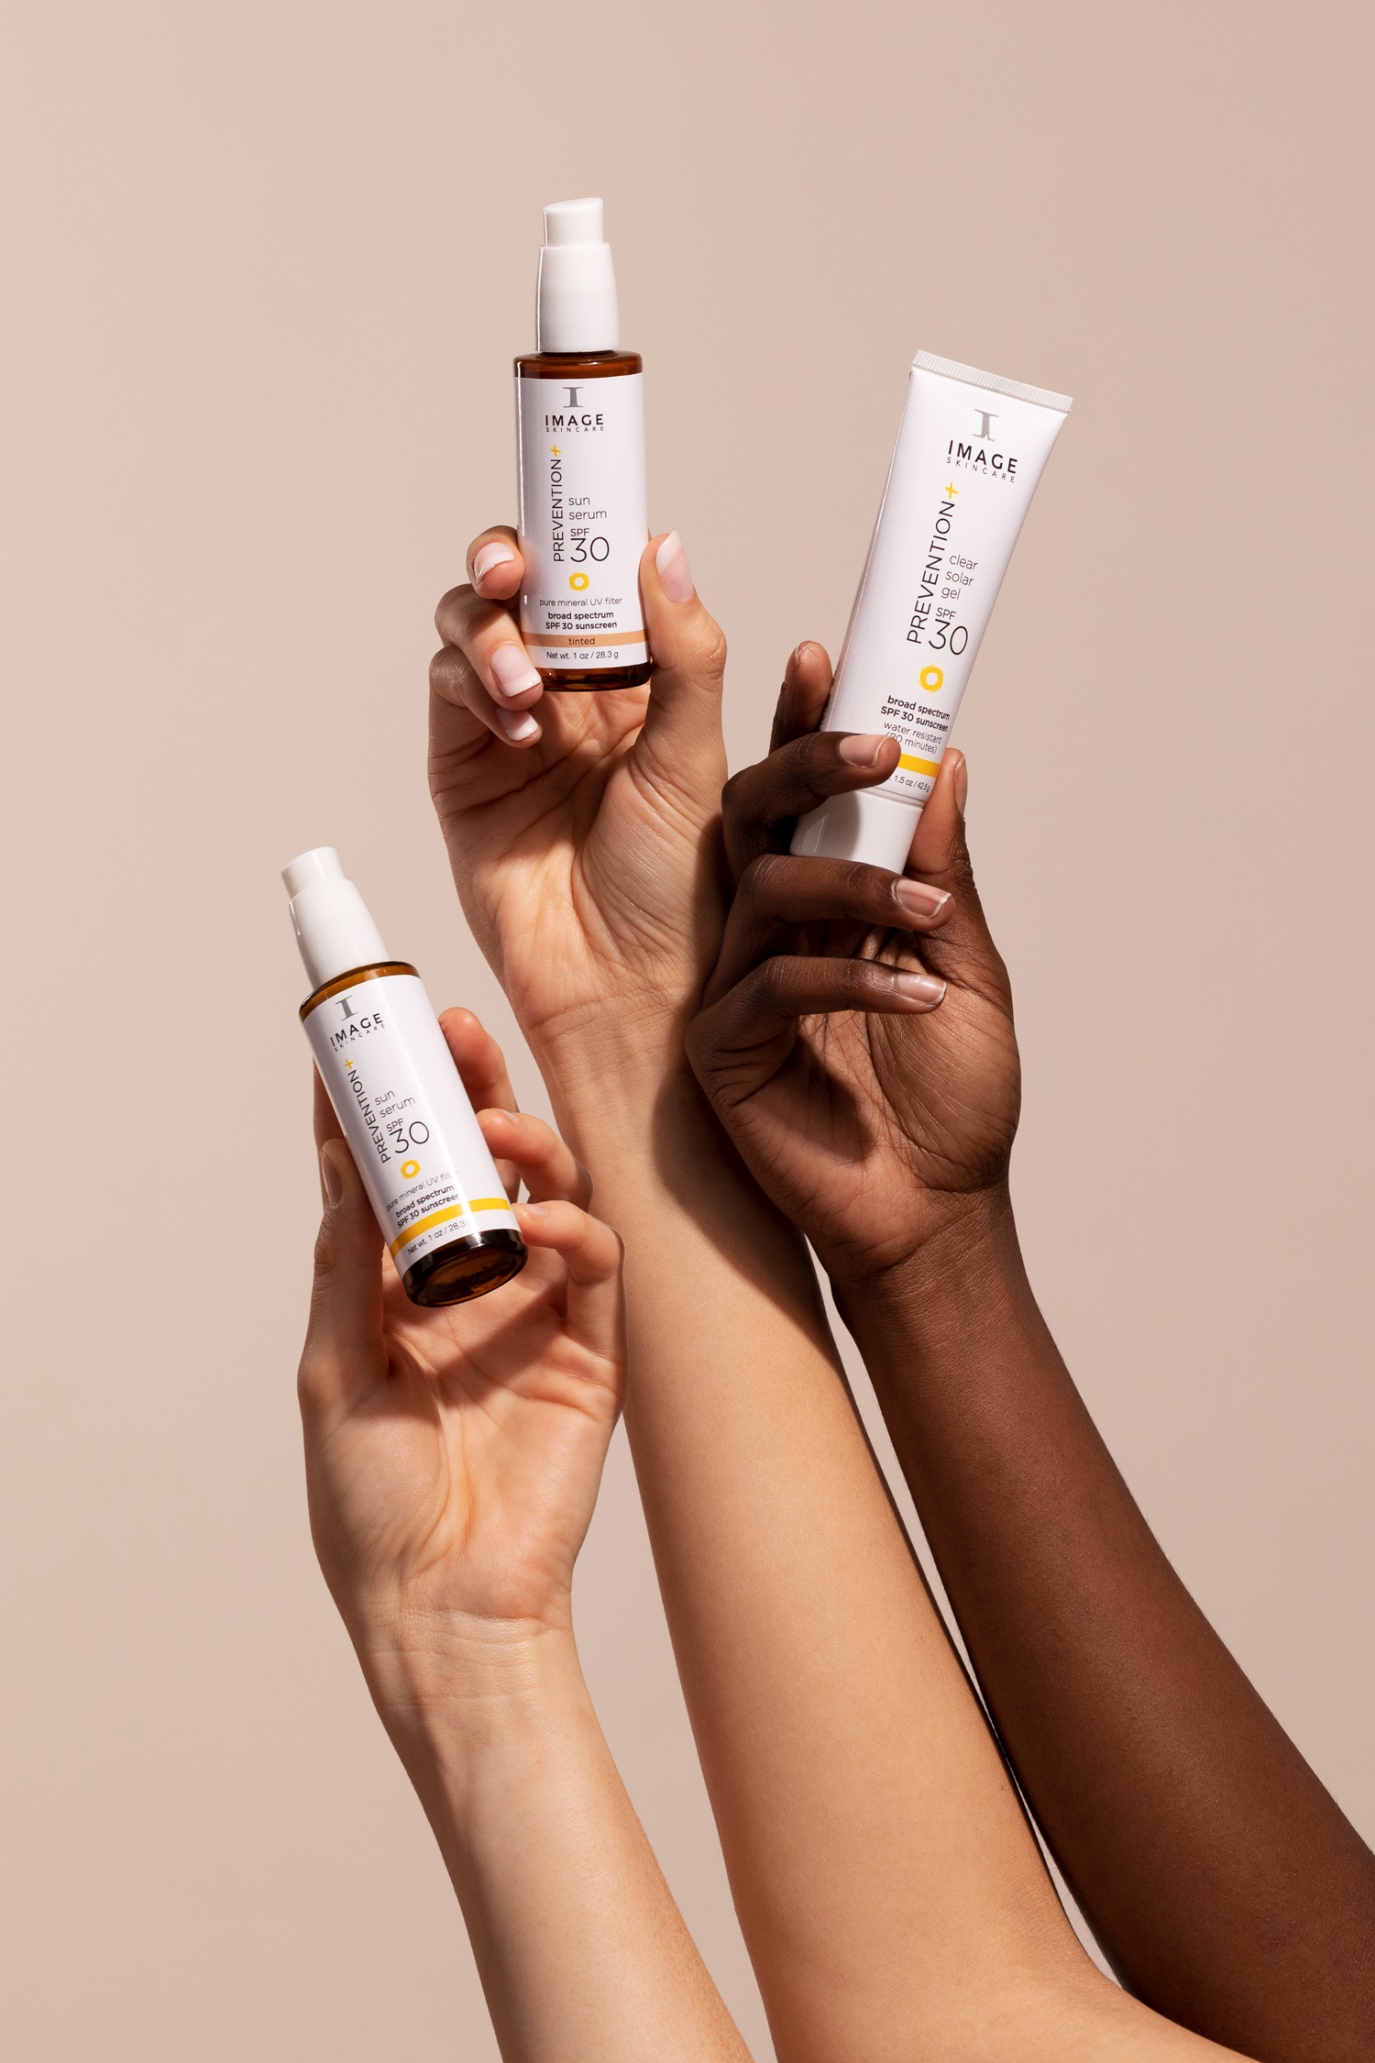 Bảo vệ da với serum và gel của dòng sản phẩm chống nắng mới: Prevention+ IMAGE Skincare - 2